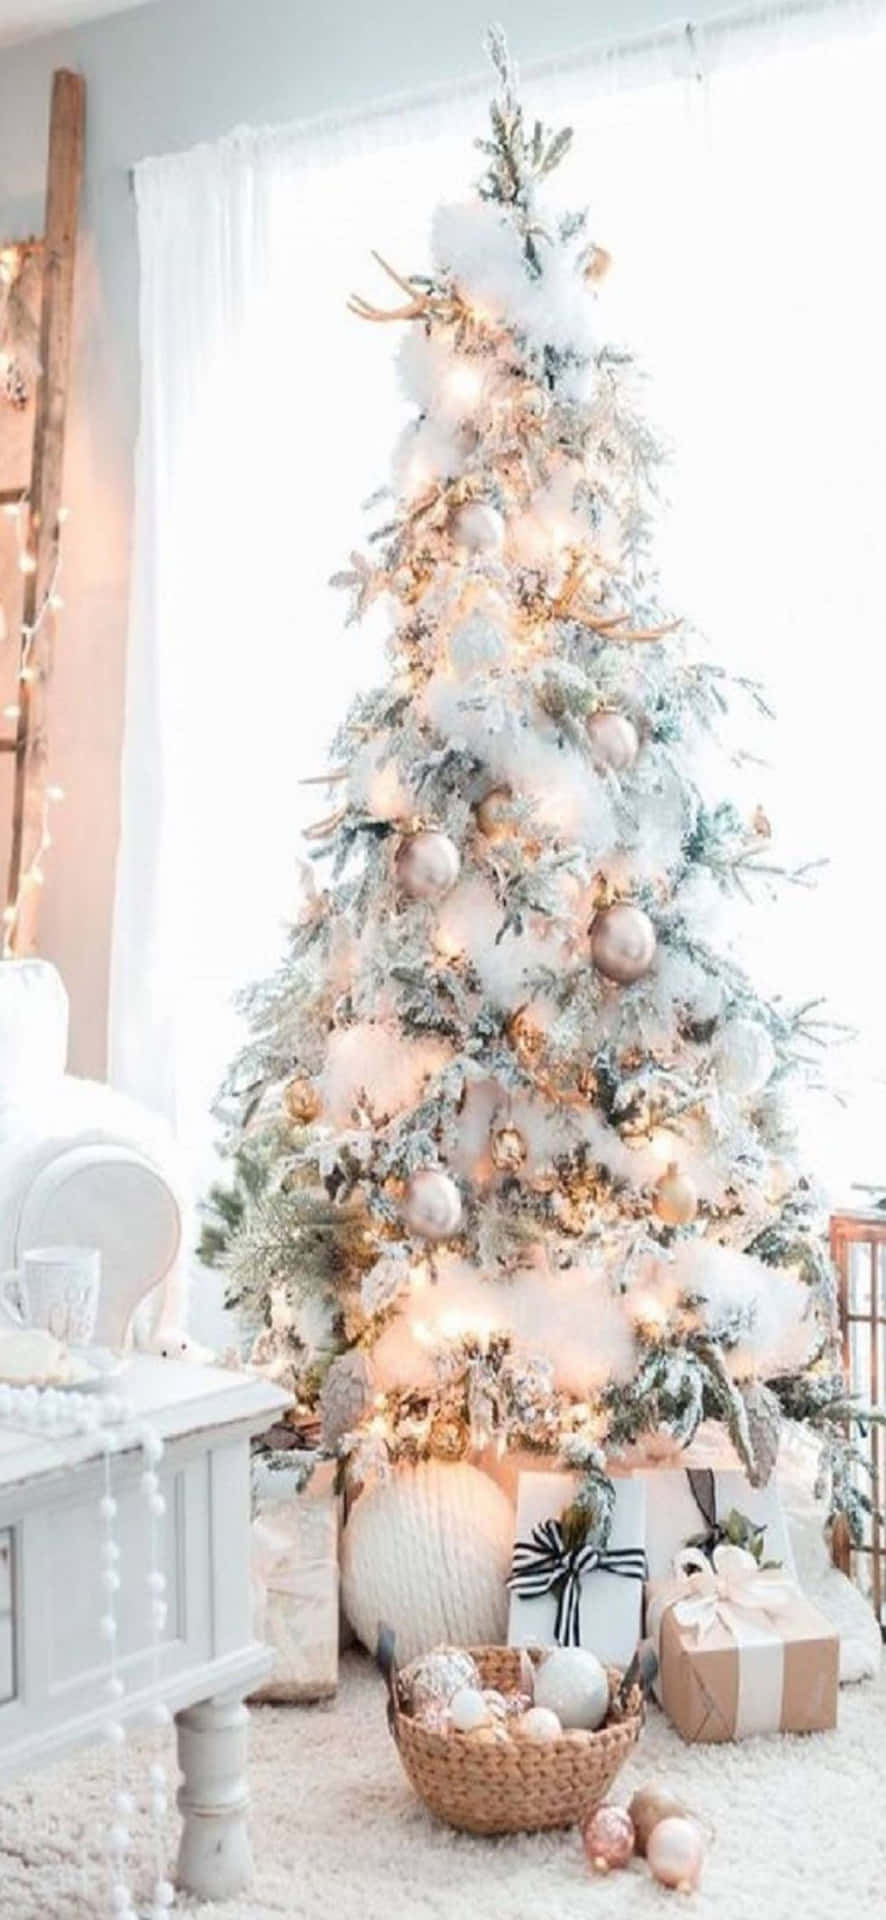 Einweißer Weihnachtsbaum Mit Weißen Dekorationen In Einem Wohnzimmer.